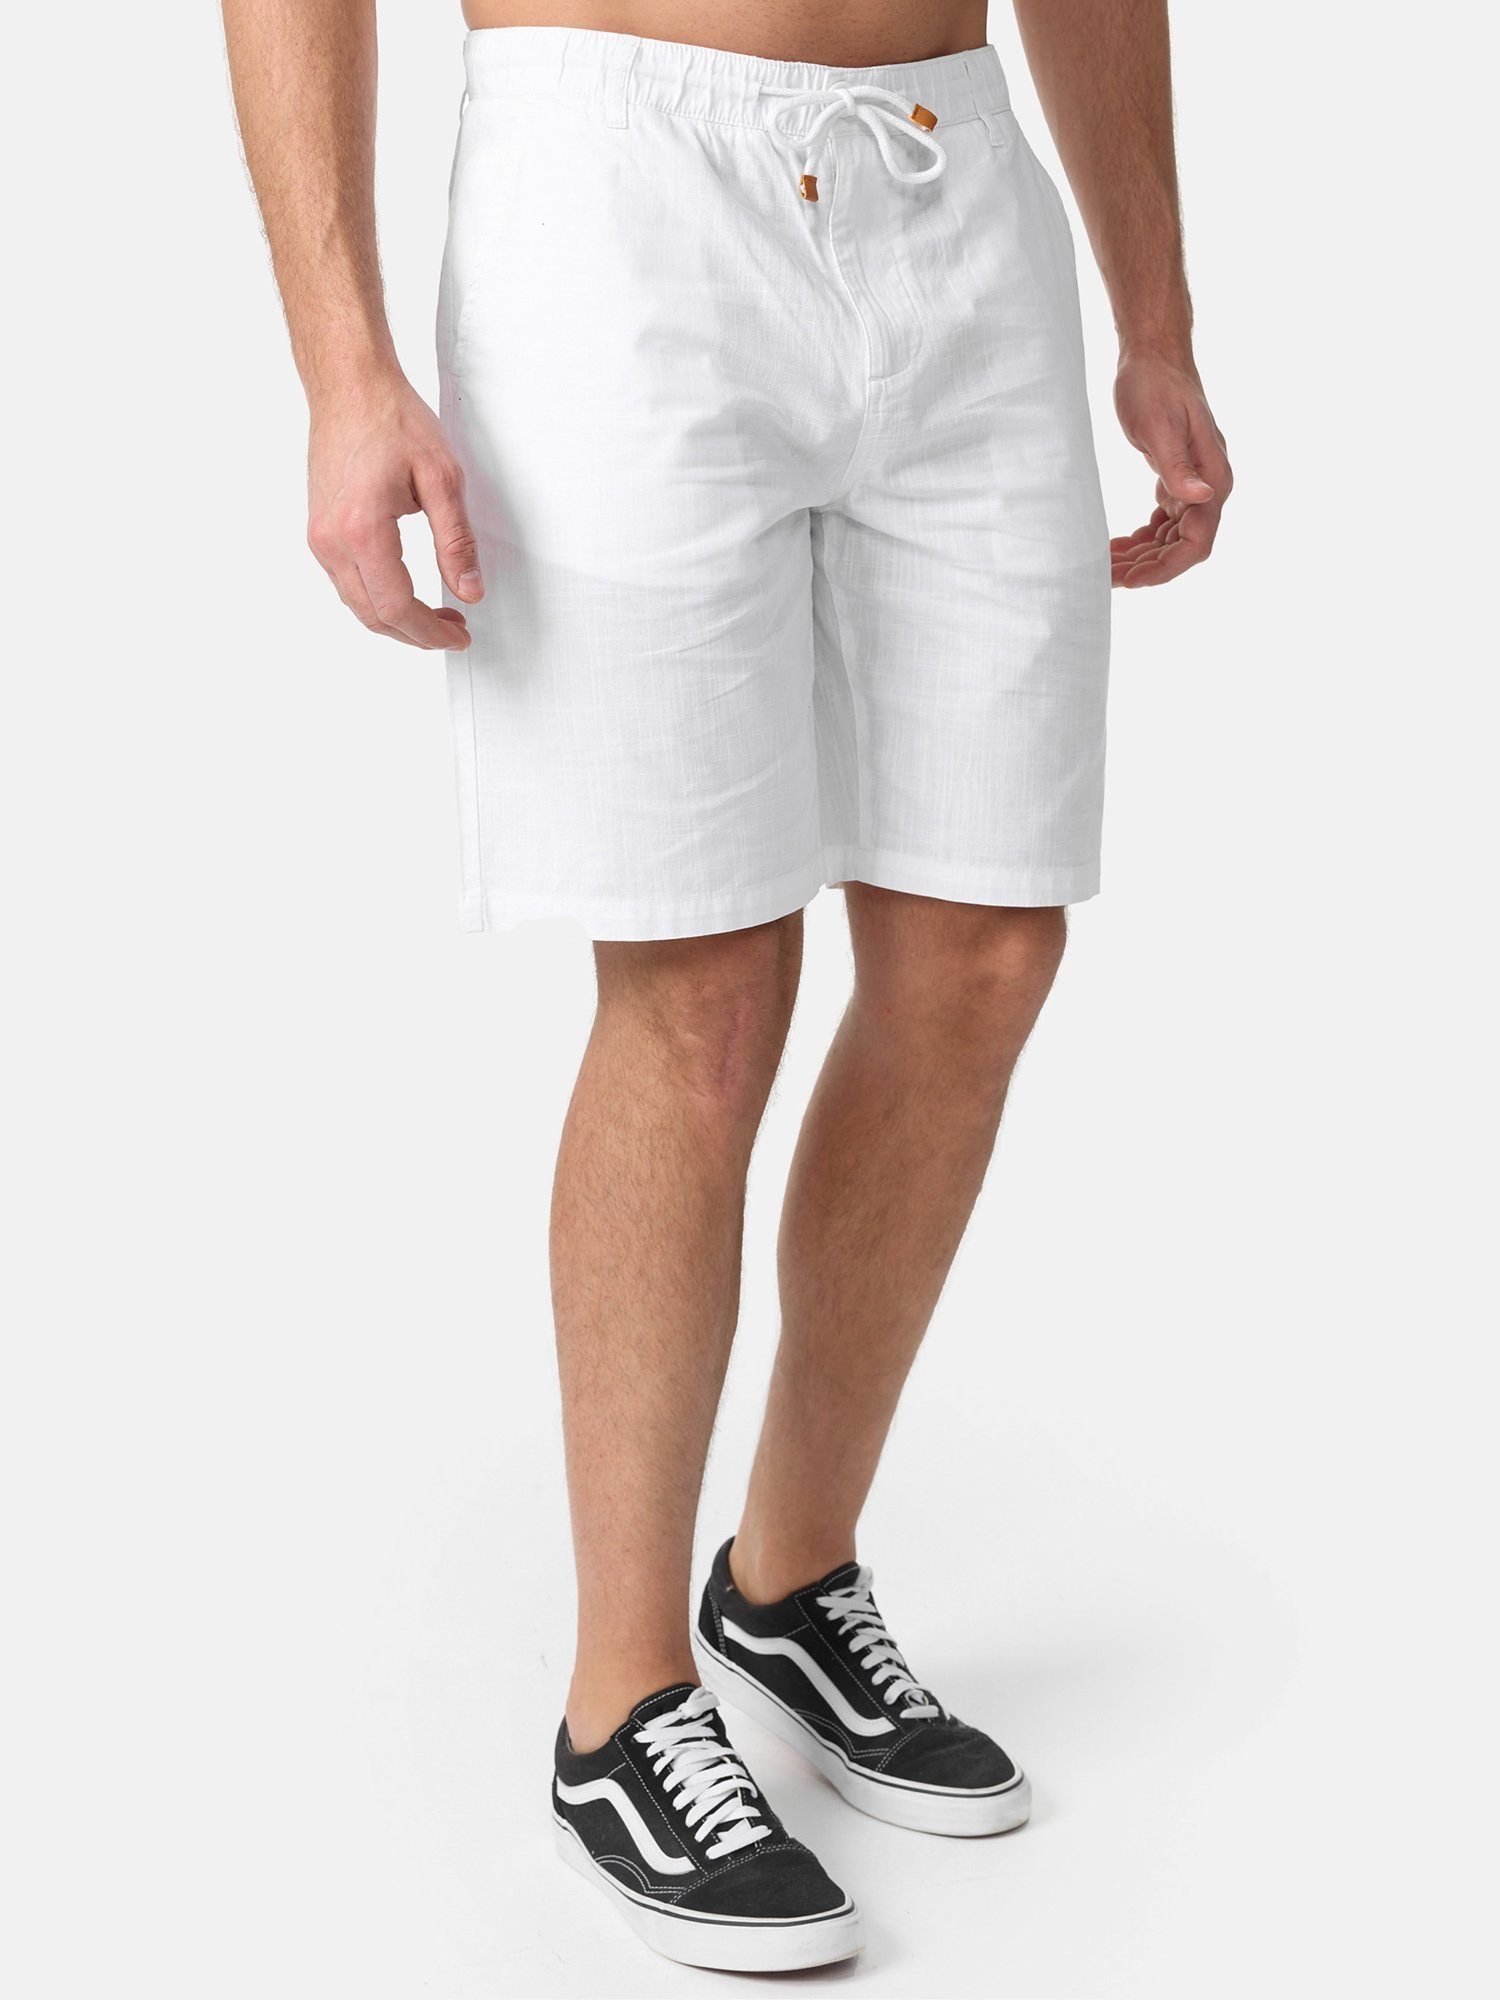 zeitlose moderne in Leinen-Optik Tazzio weiß & A205 Hose kurze Shorts